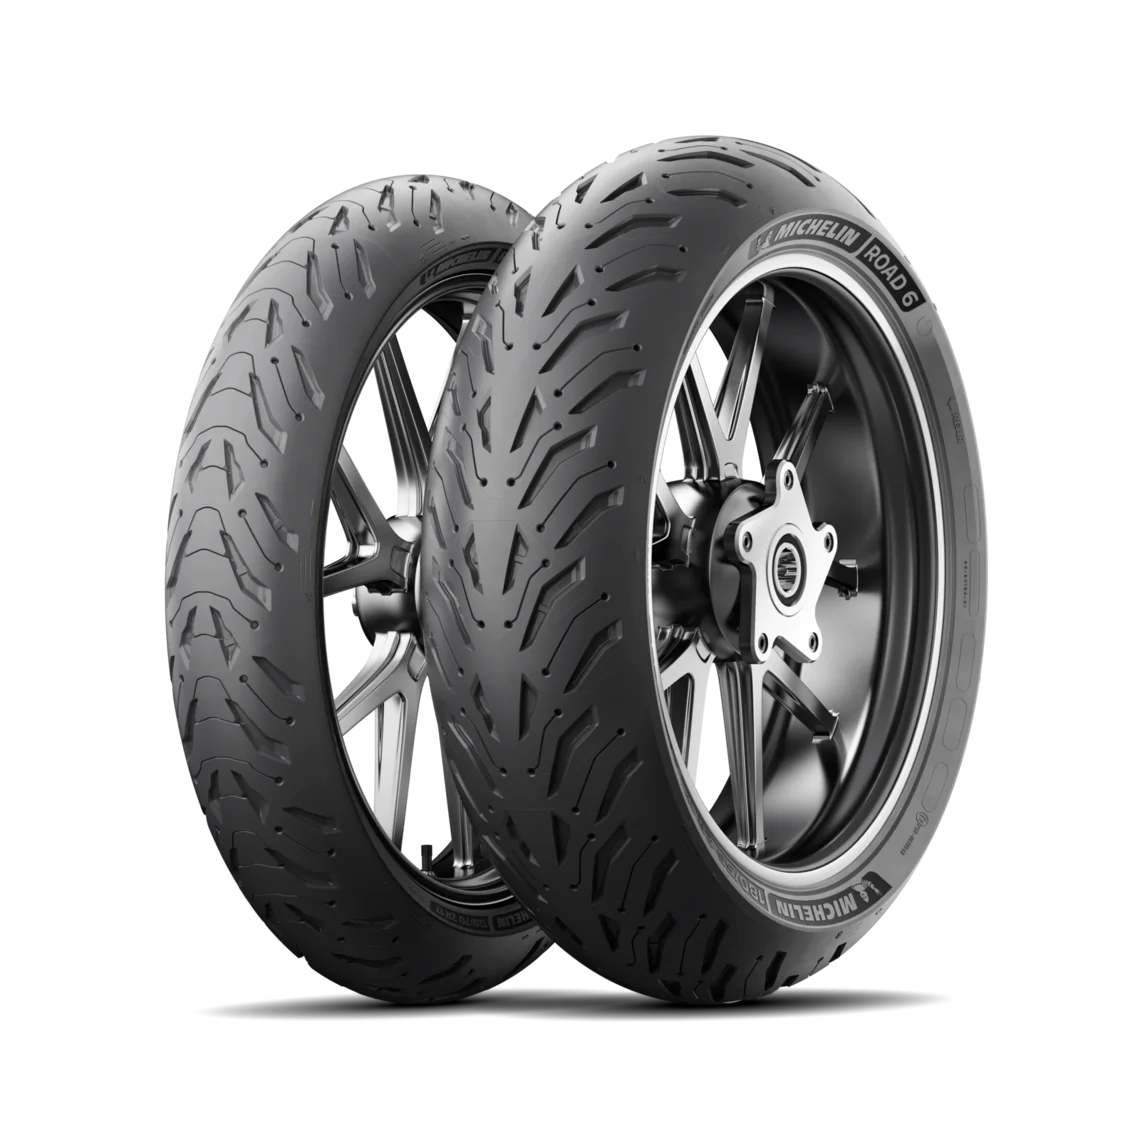 Michelin Michelin 120/70 ZR19 60W ROAD 6 pneumatici nuovi Estivo 